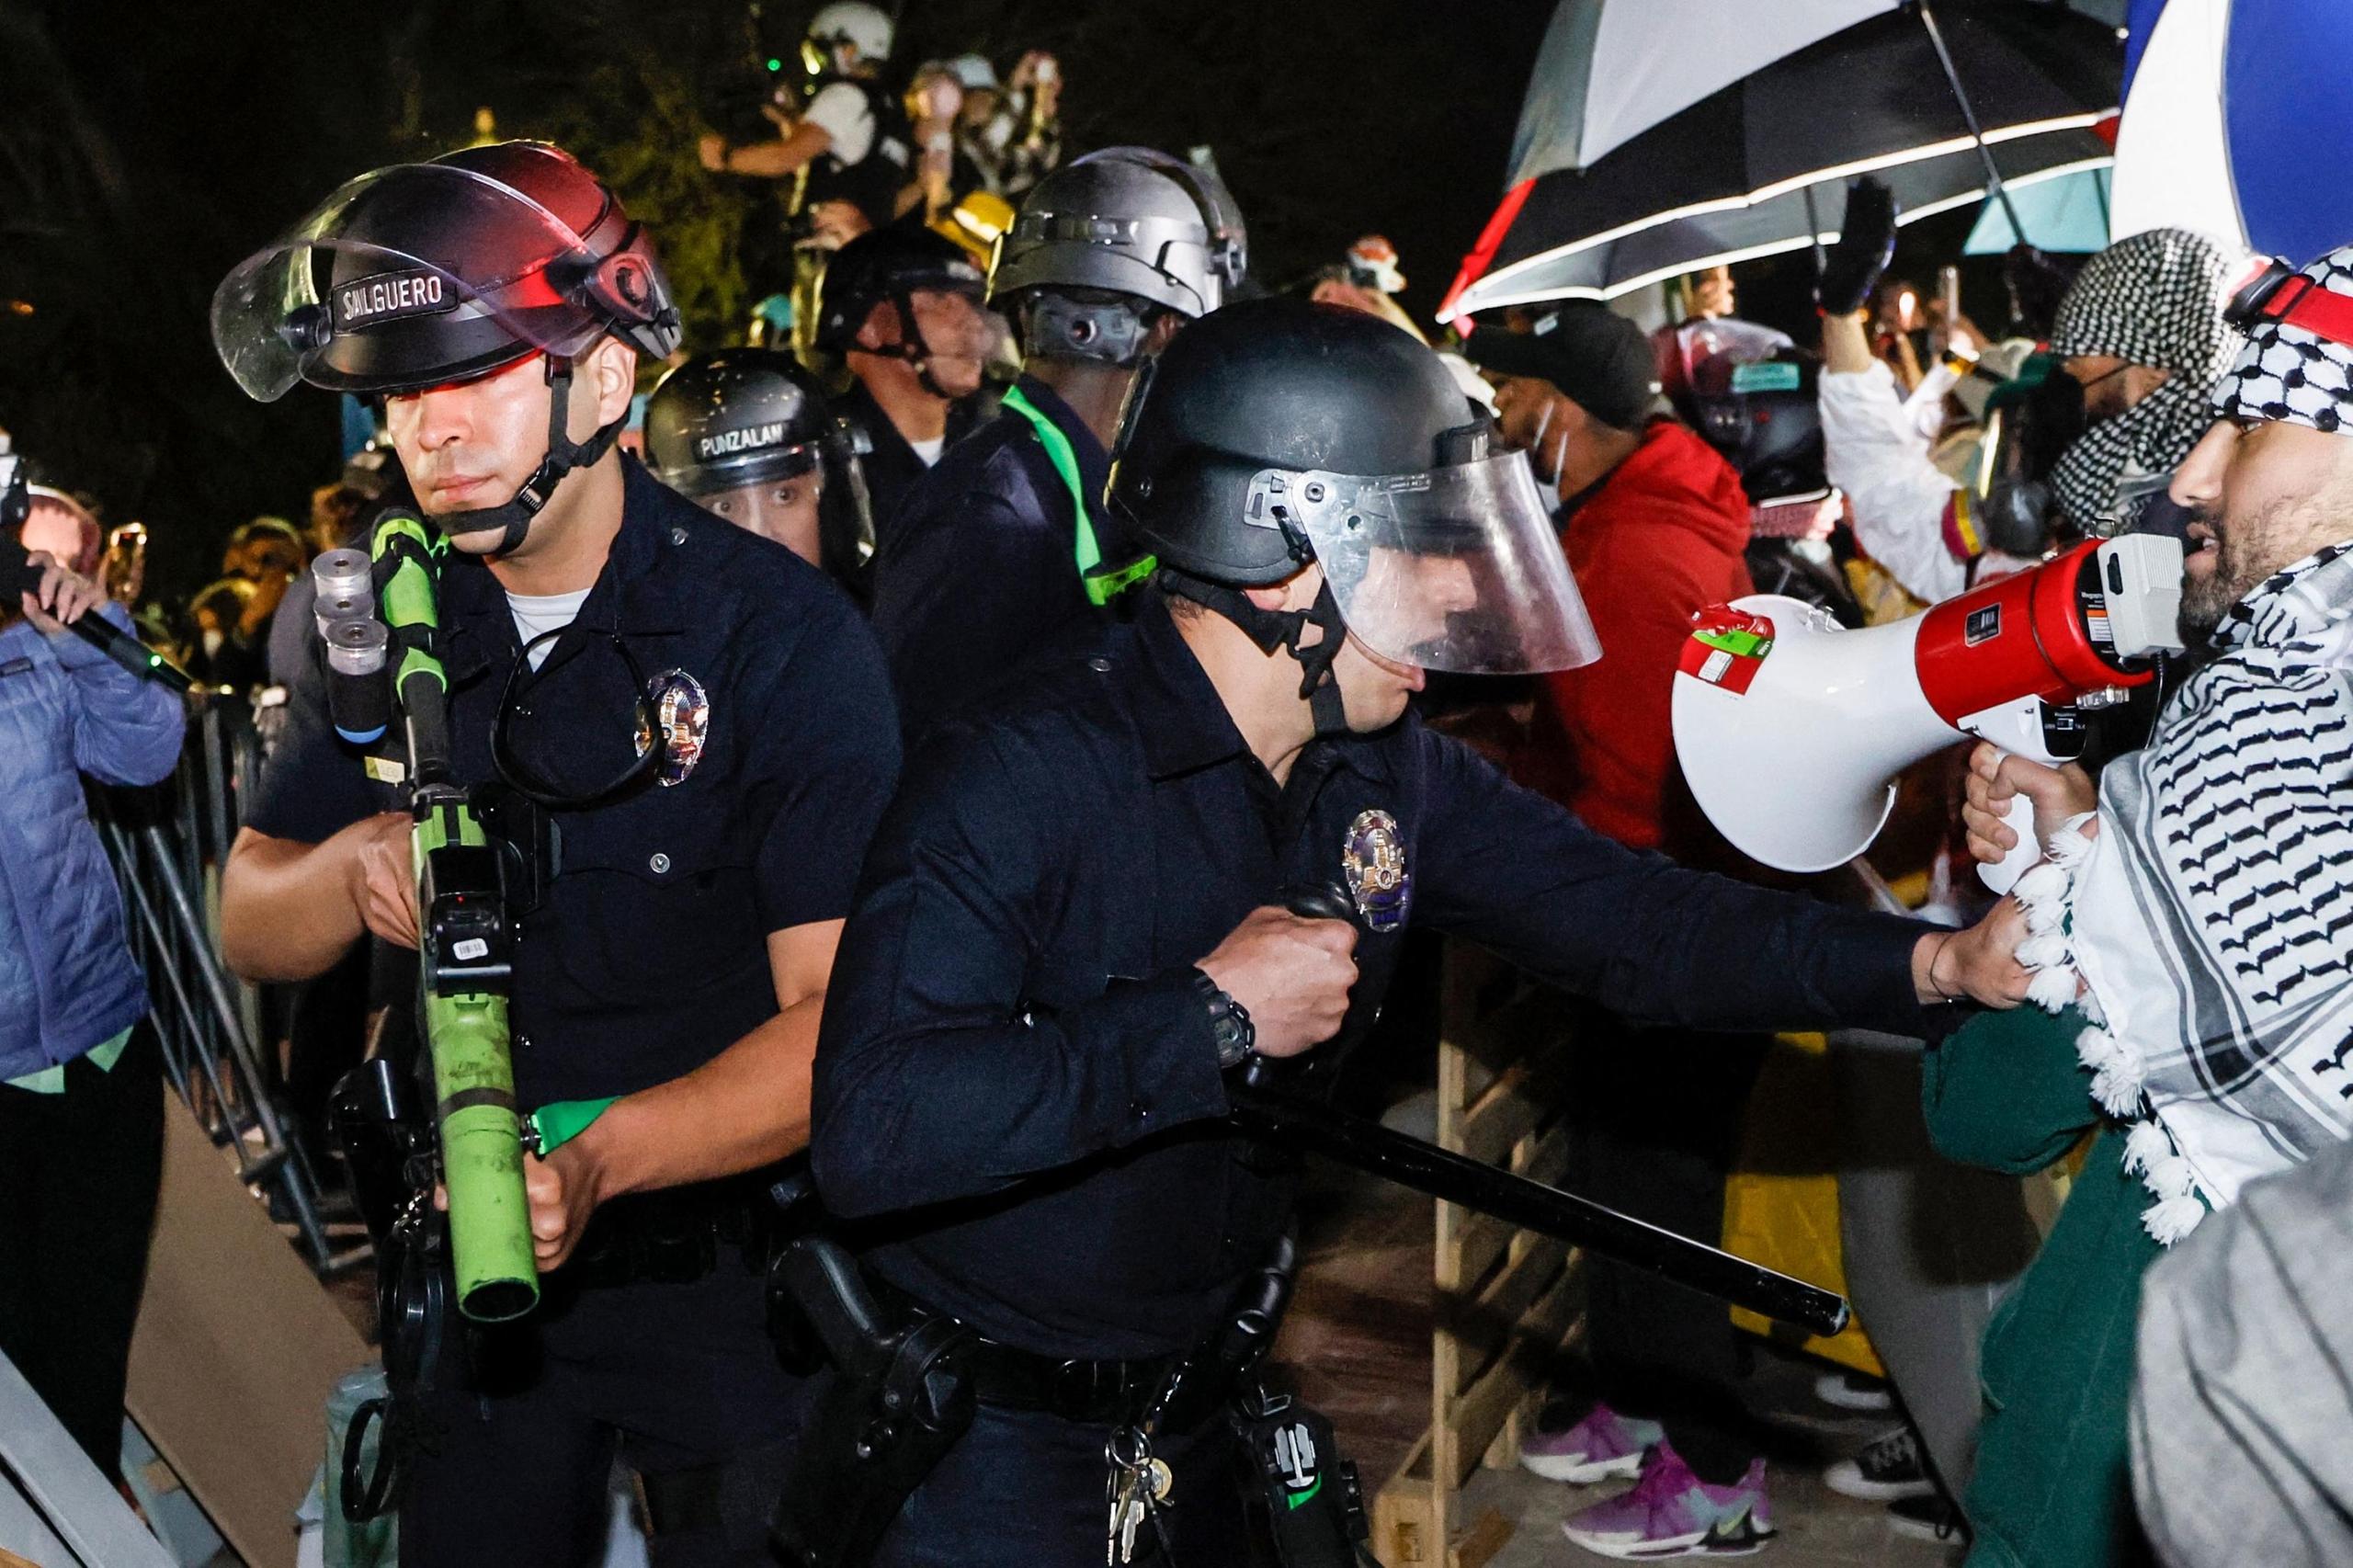 Proteste pro Gaza, sale la tensione negli atenei Usa: la polizia entra nel campus Ucla a Los Angeles